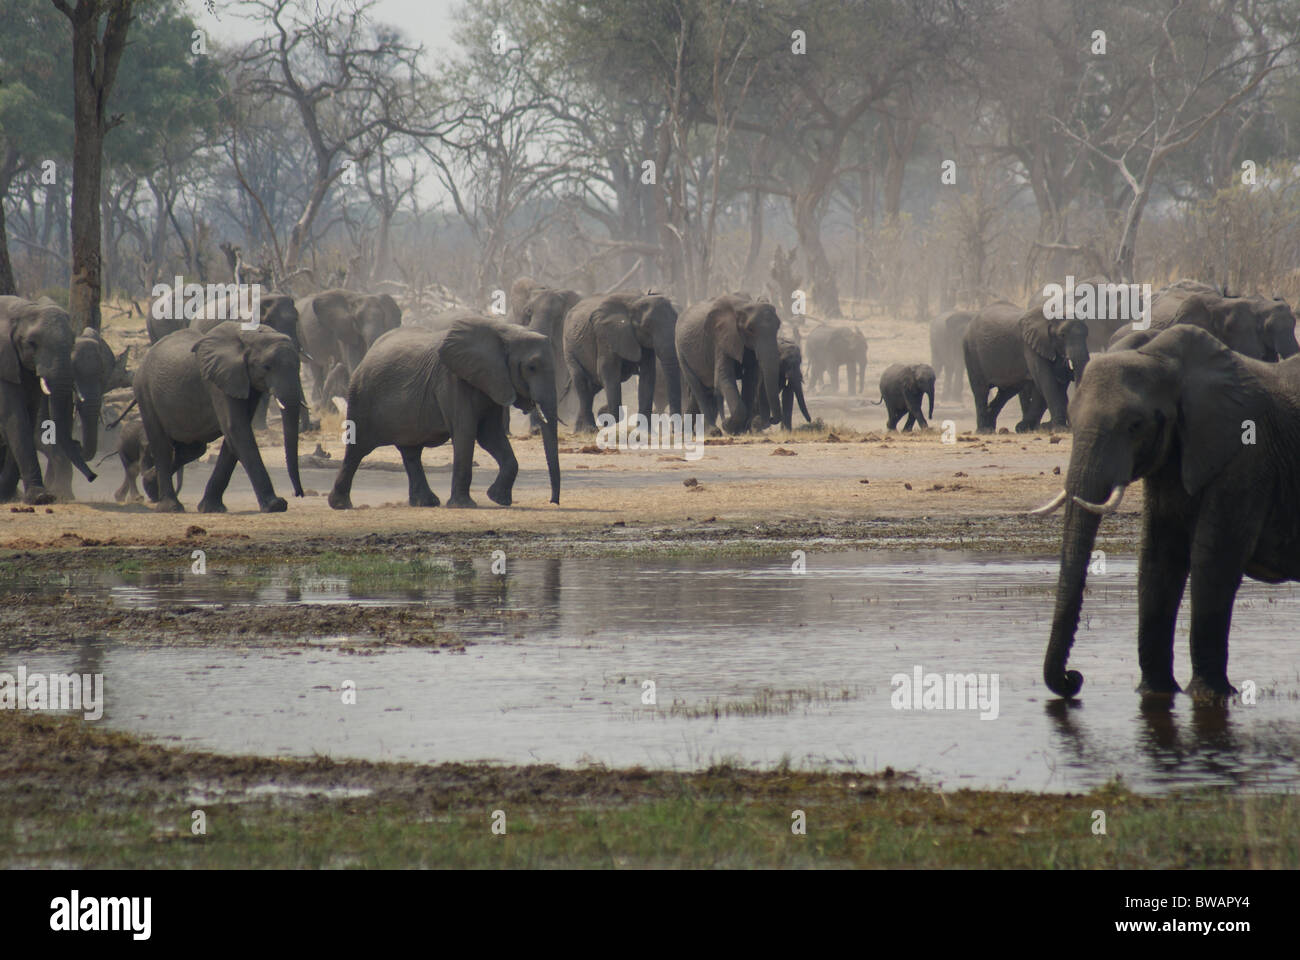 Herds of Elephant storming water in Botswana's Okavango Delta Stock Photo